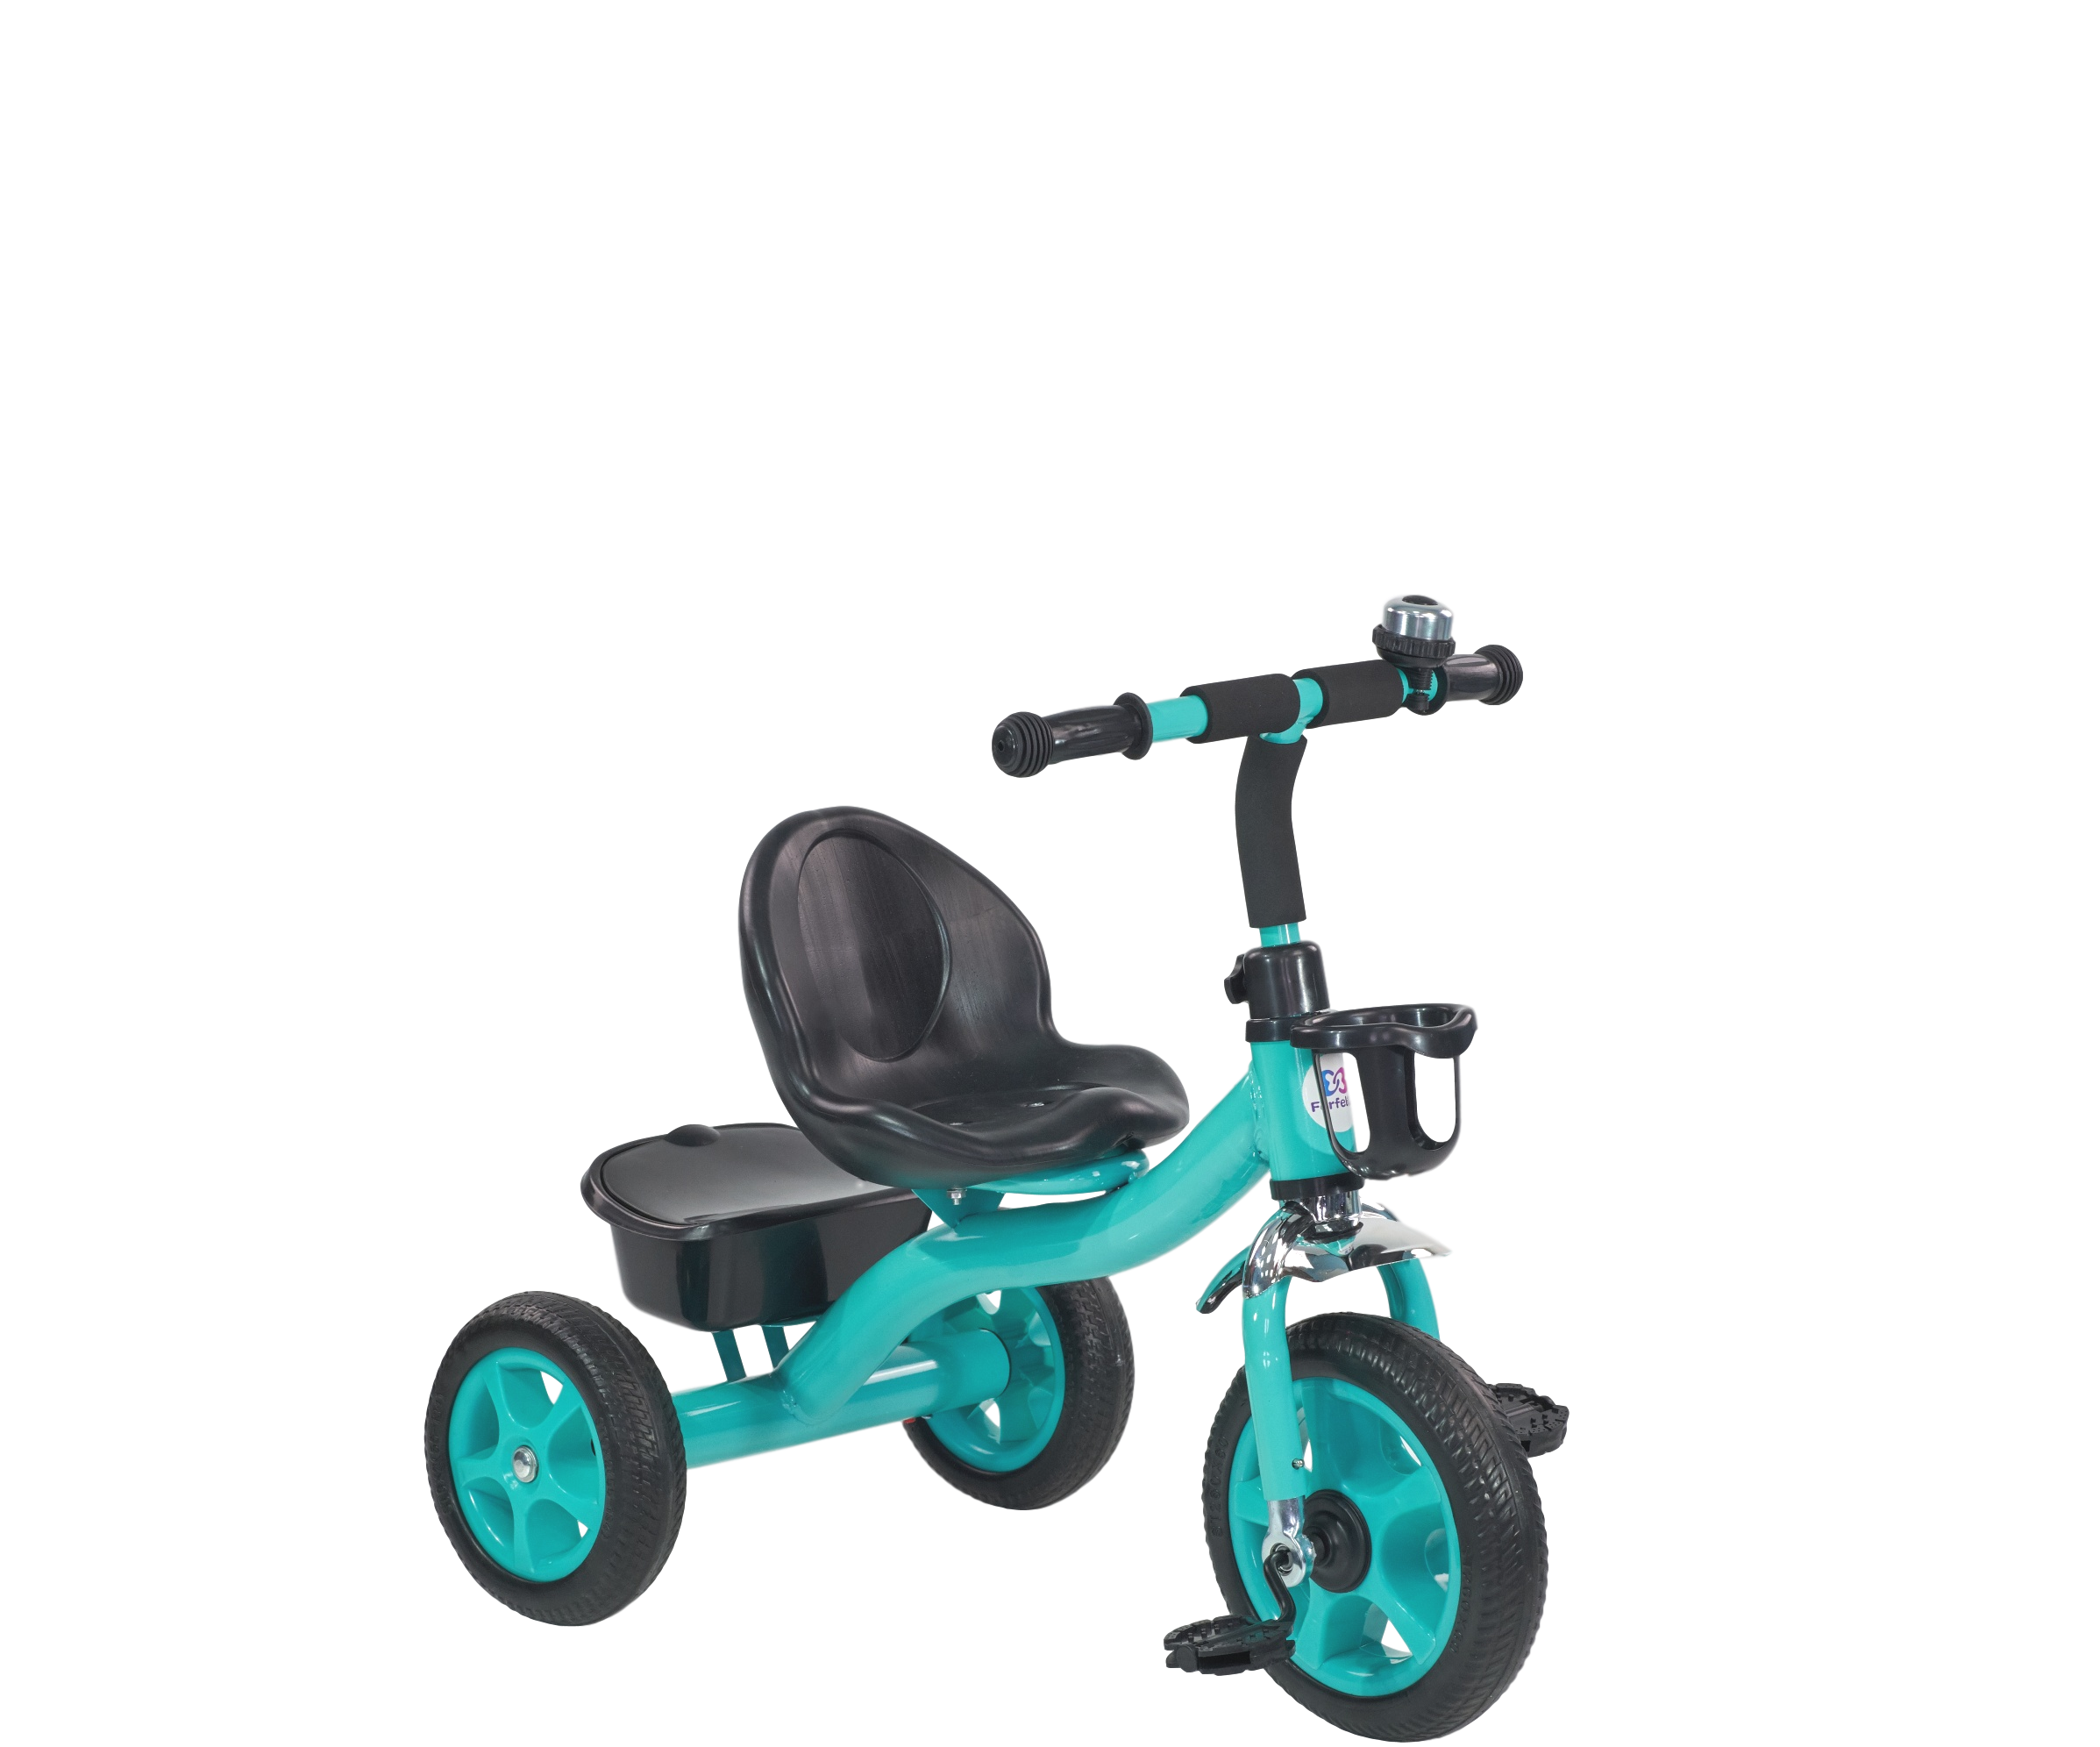 Детский трехколесный велосипед (2020) Farfello TSTX-023. Трехколесные велосипеды детские велосипед трехколёсный Farfello s-06a. Farfello 207 велосипед трехколесный. Детский трехколесный велосипед (2021) Farfello s-06a. Трехколесные велосипеды ростов